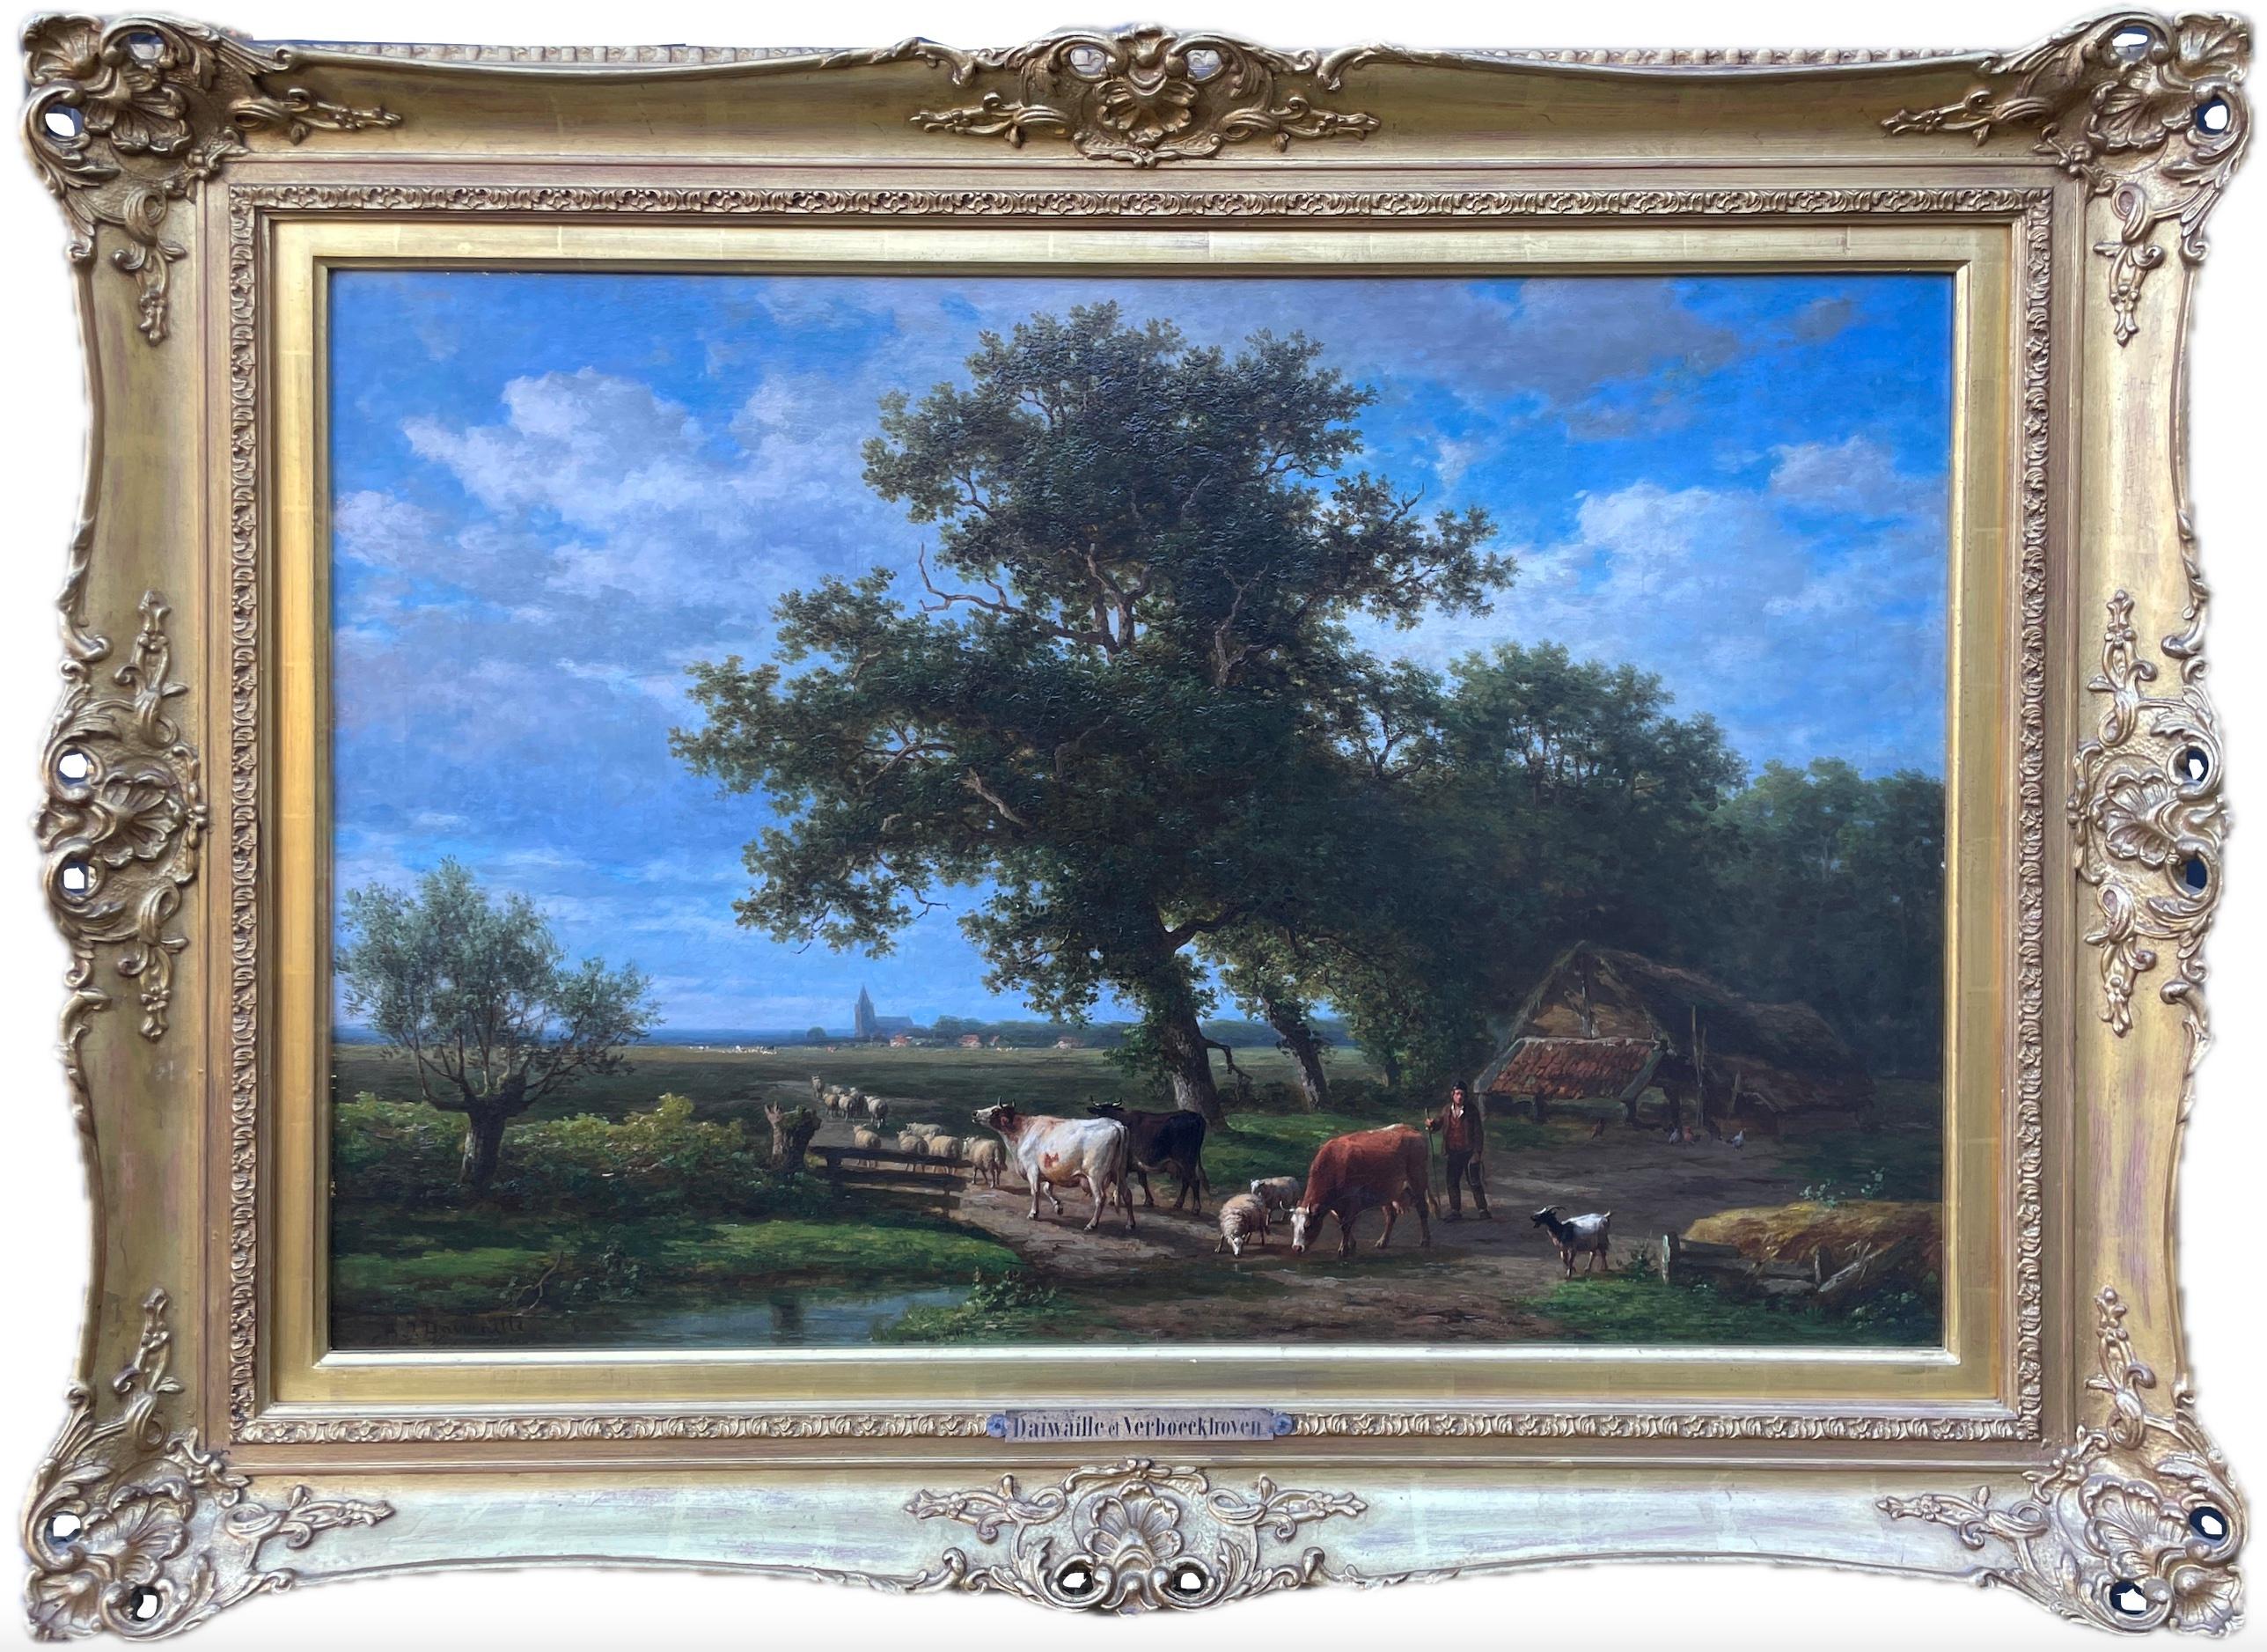 Eugène Verboeckhoven Landscape Painting - Oil on canvas by Eugene Verboeckhoven & Alexander Daiwaille (1796-1881)